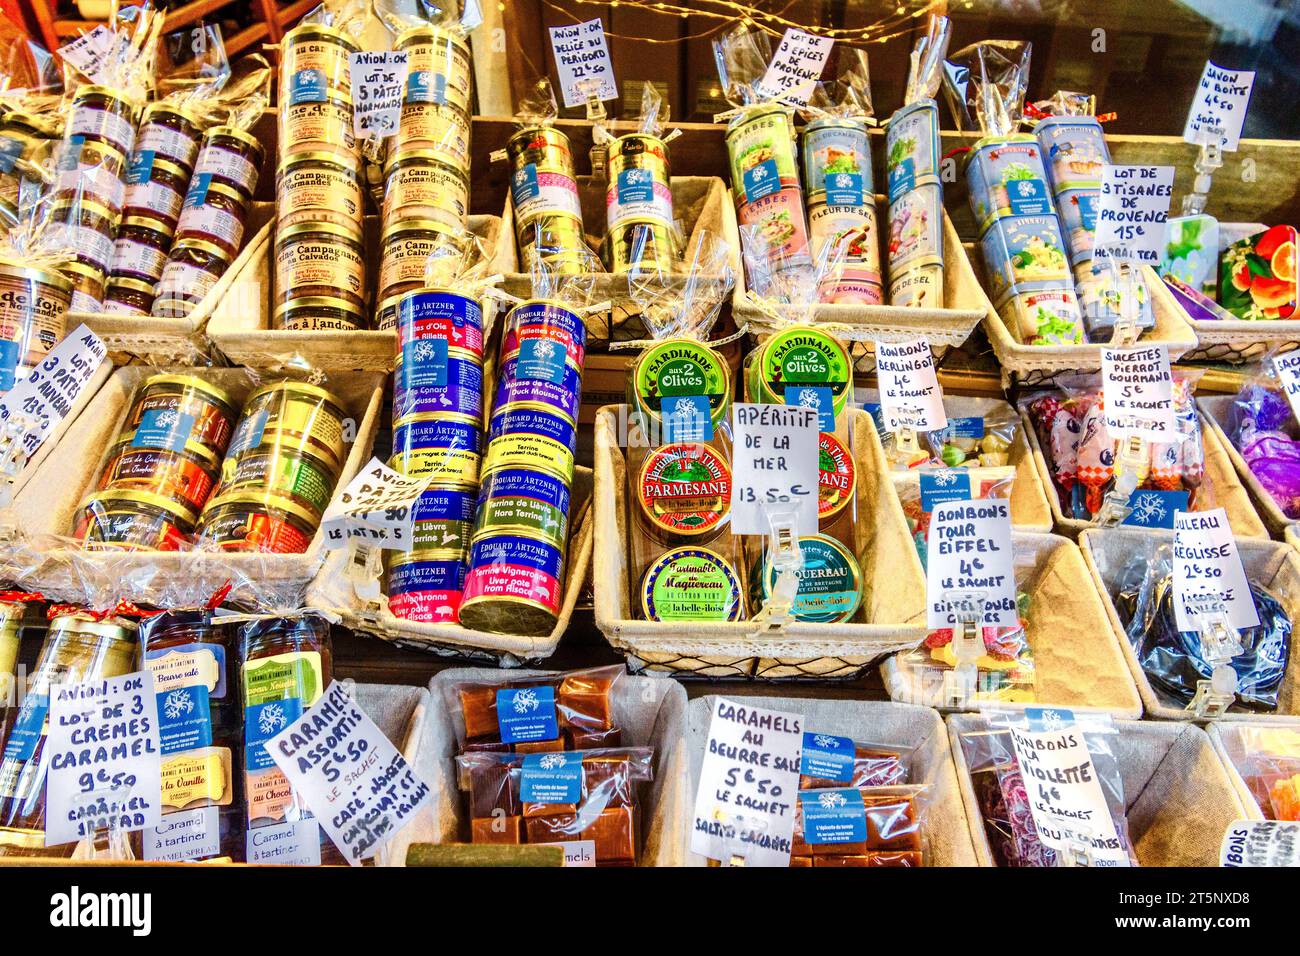 Schaufensterpräsentation mit Süßigkeiten aus der Dose, Oliven, Köstlichkeiten, Kräutern, Fisch und Tees, die als „Avion OK“ gekennzeichnet sind, für den sicheren persönlichen Export - Montmartre, Paris 18, Frankreich. Stockfoto